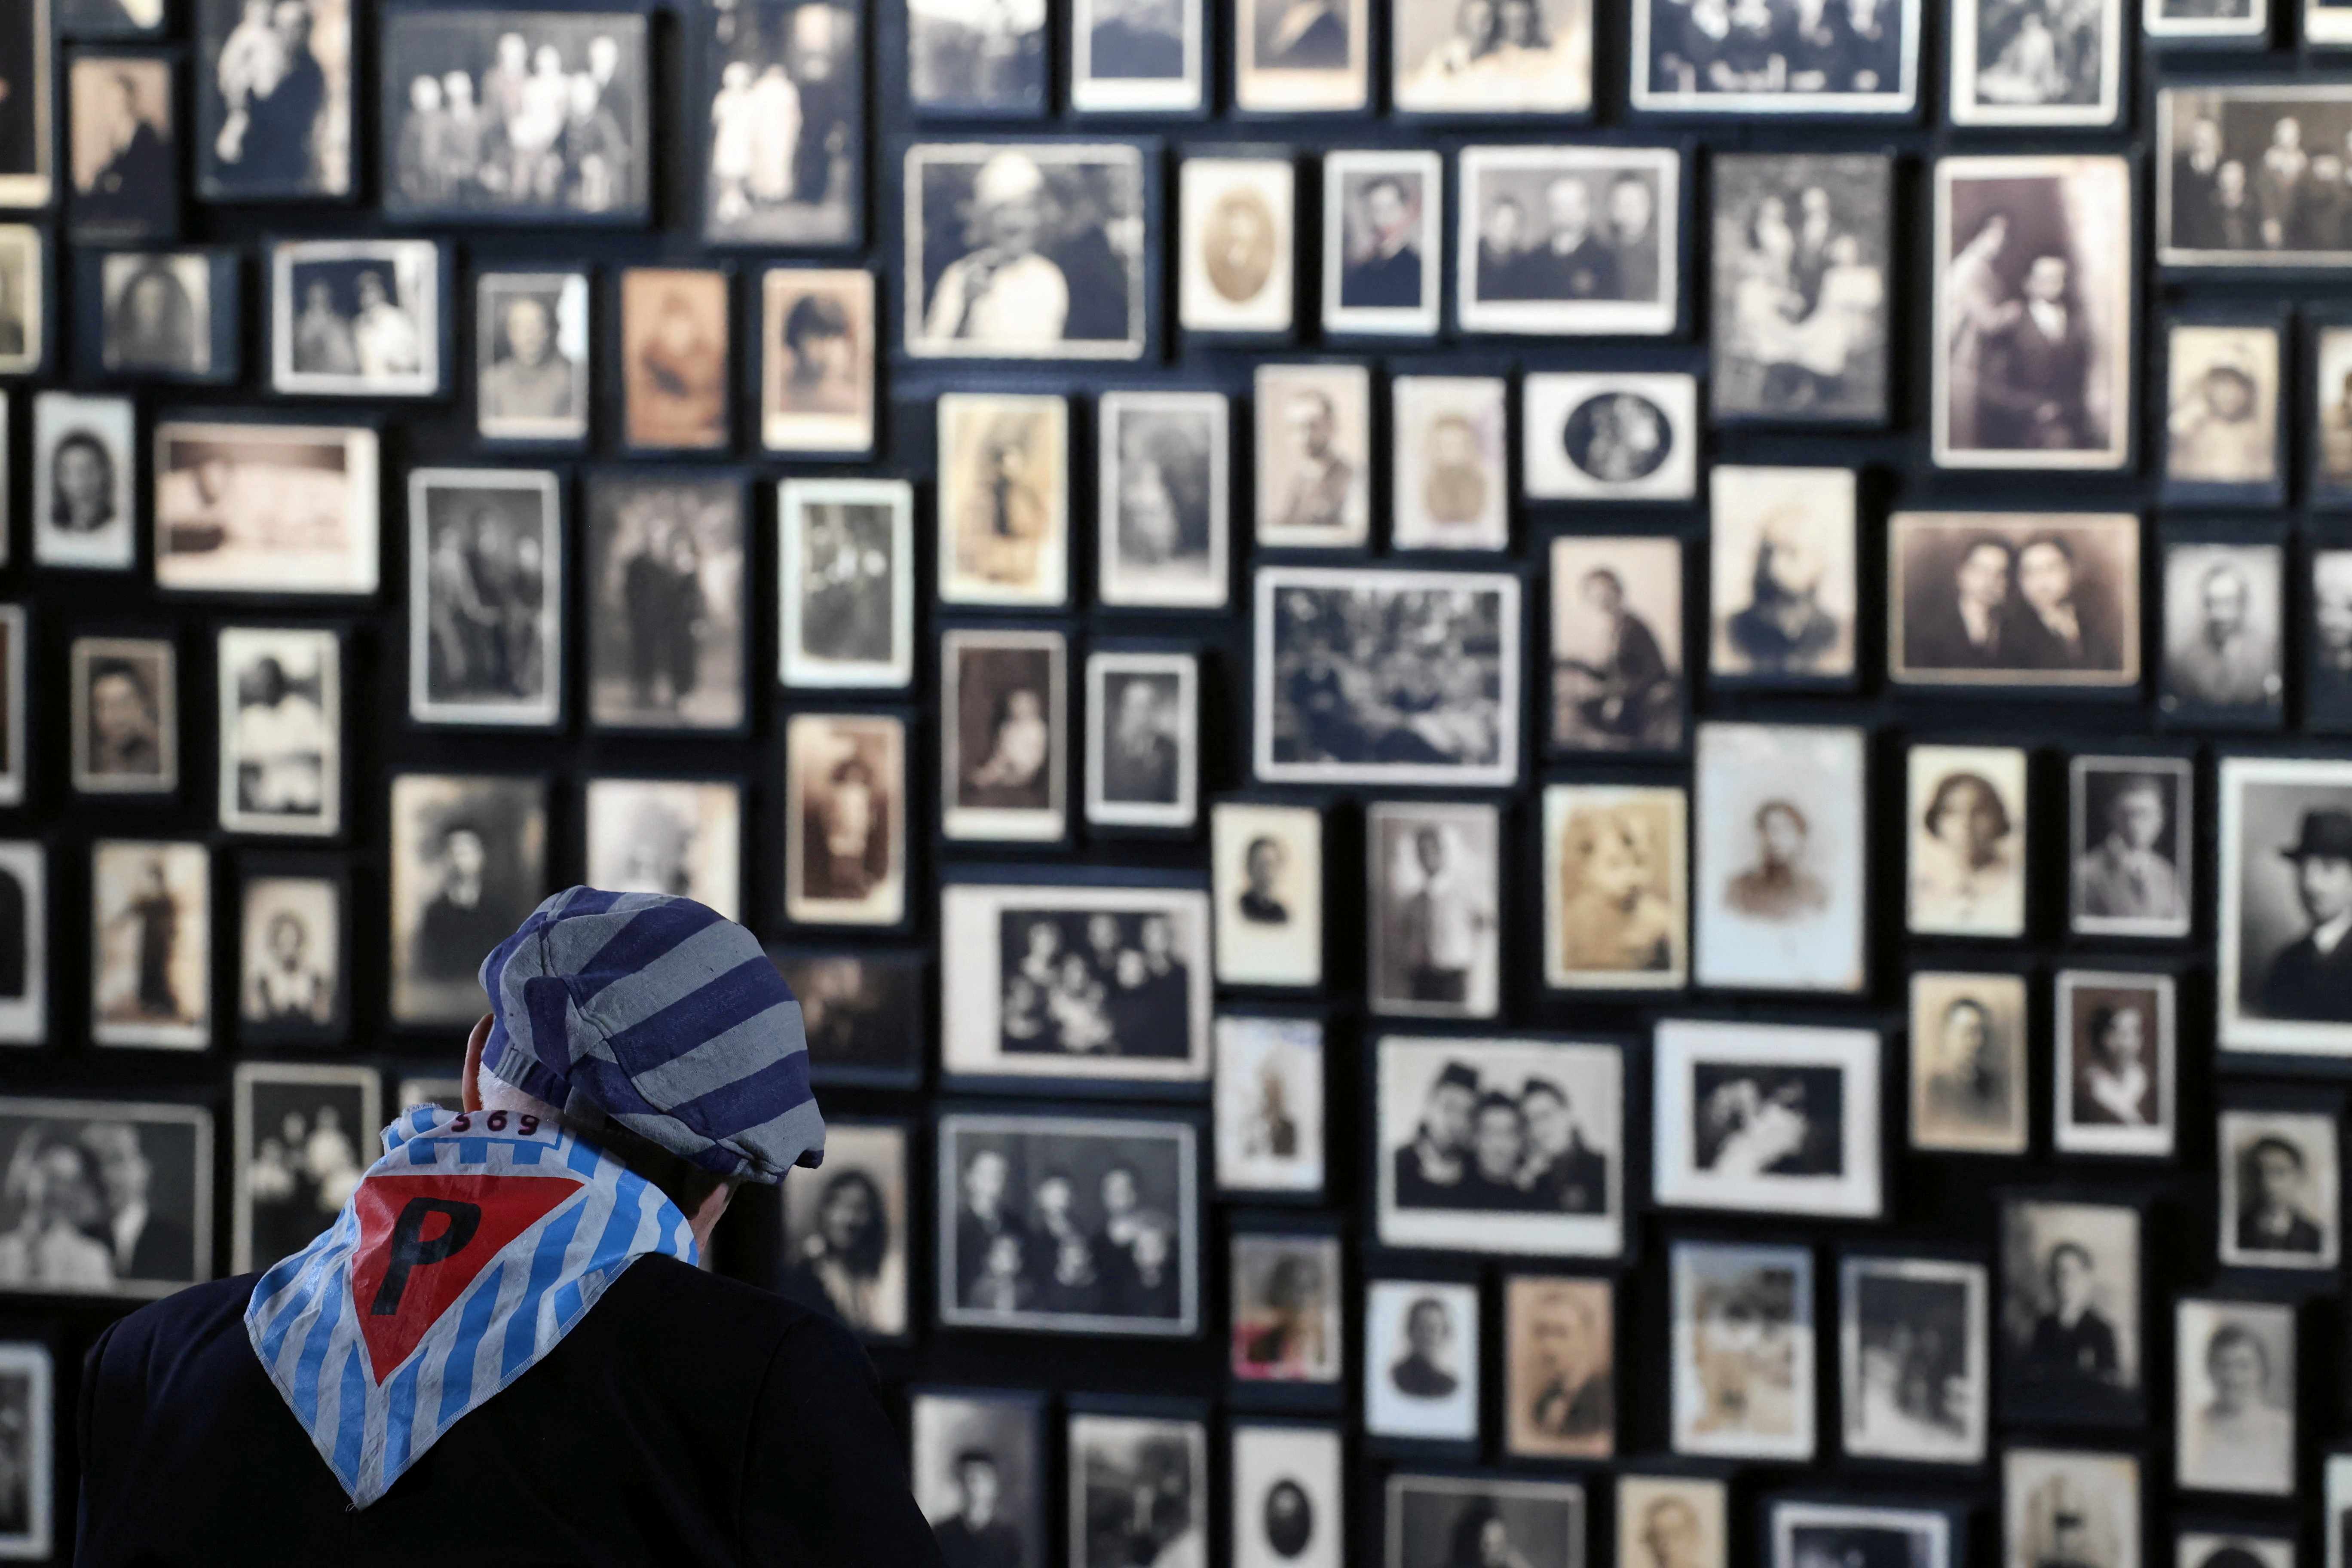 Anniversary of liberation of Auschwitz-Birkenau death camp